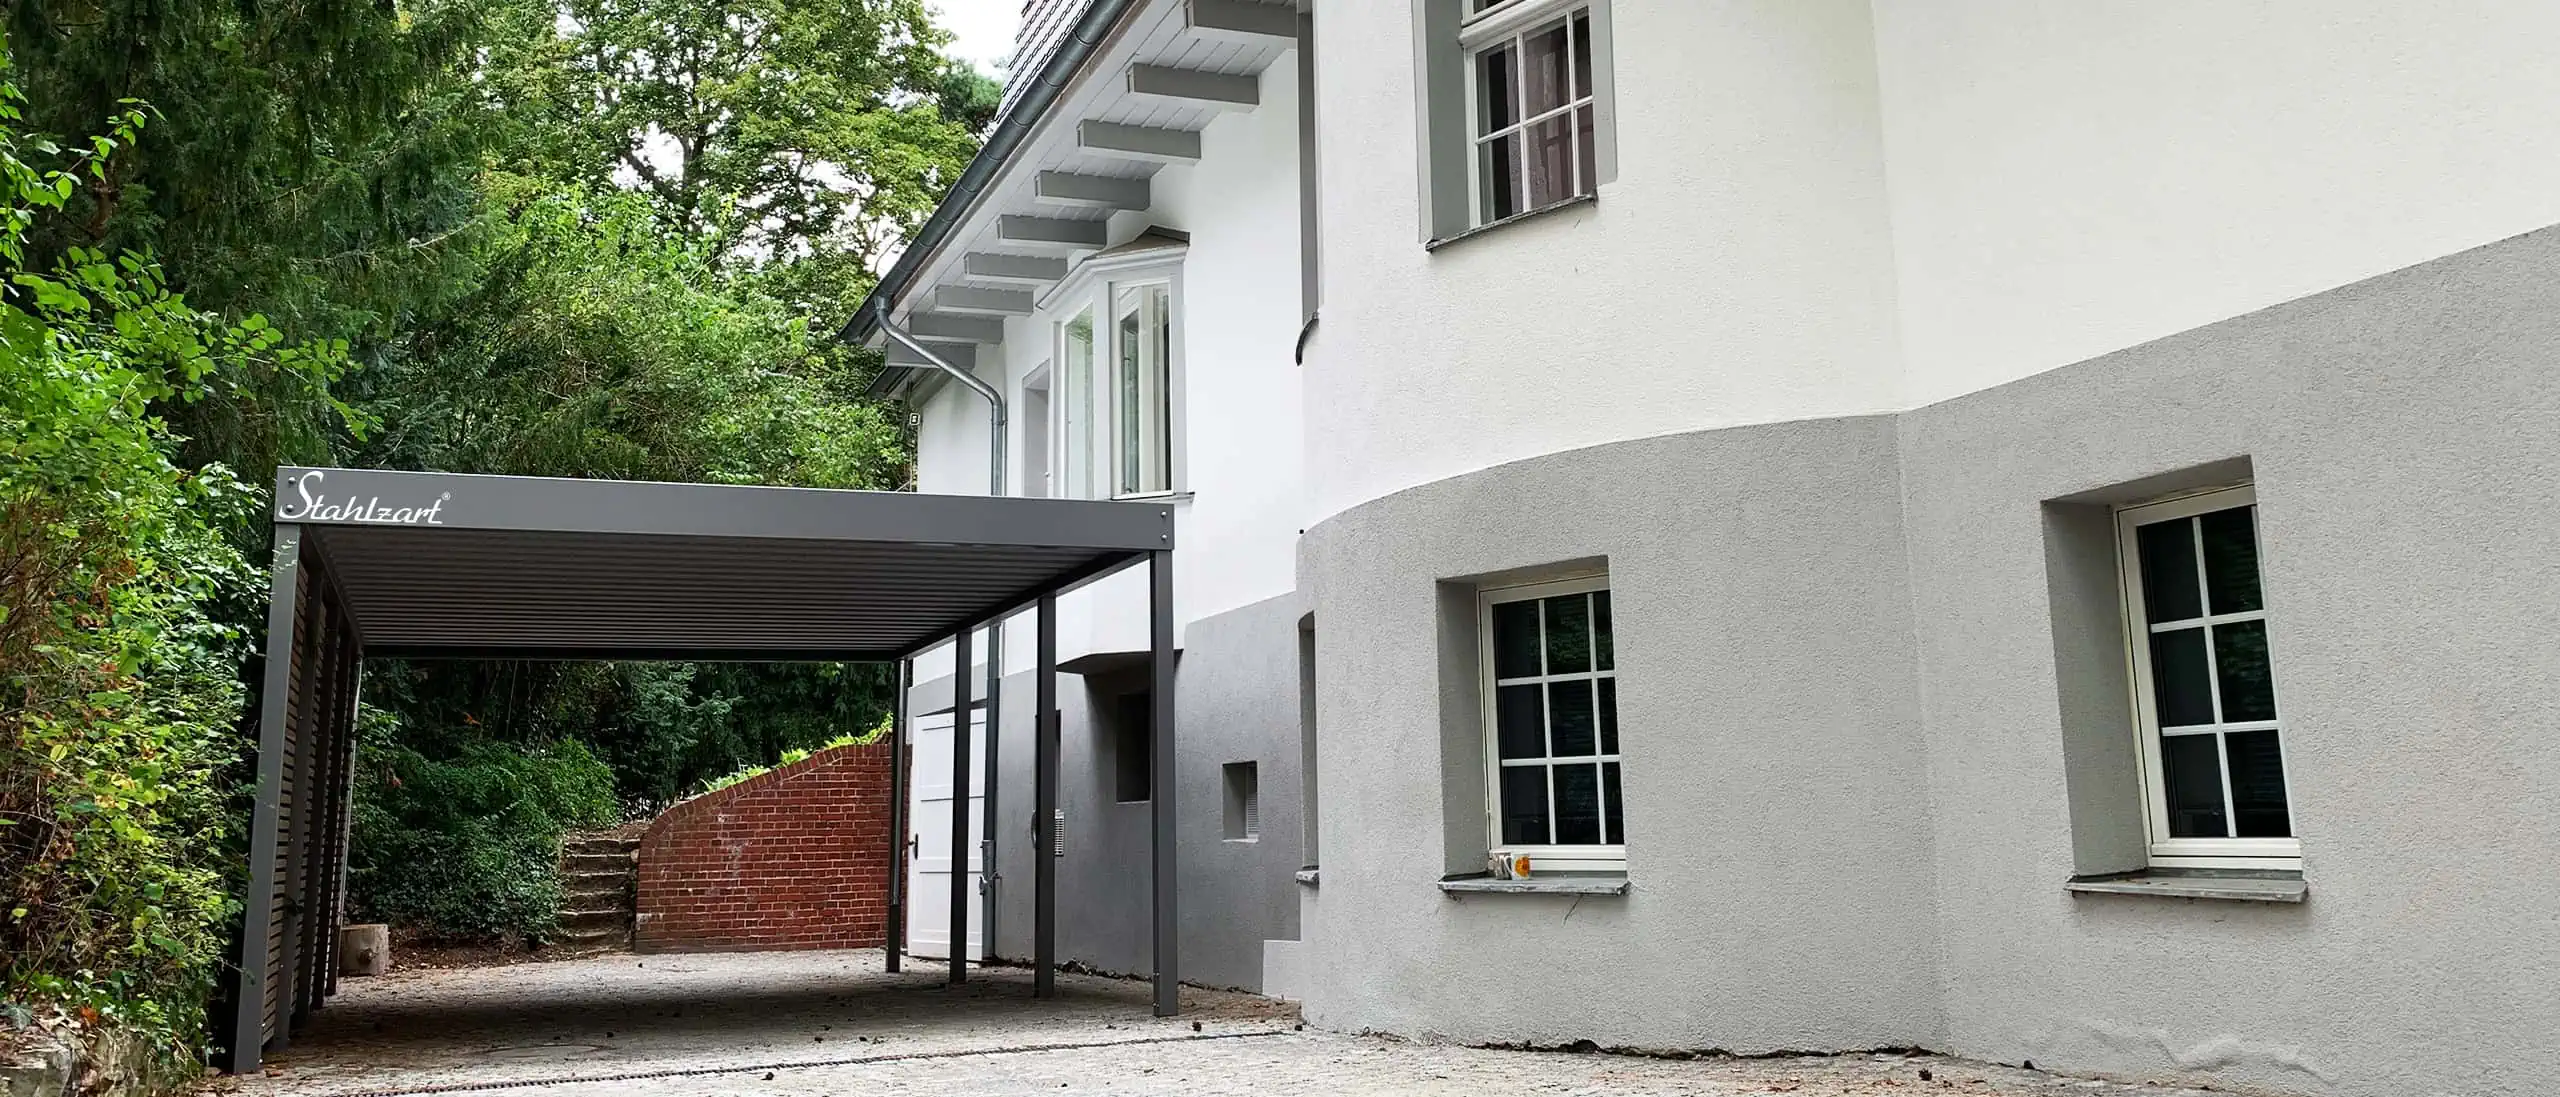 carport-metall-holz-dach-am-haus-villa-architektur-modern-anthrazit-flachdach-design-offen-seitenwand-laerche-einzelcarport-metallcarport-stahlcarport-stahlzart